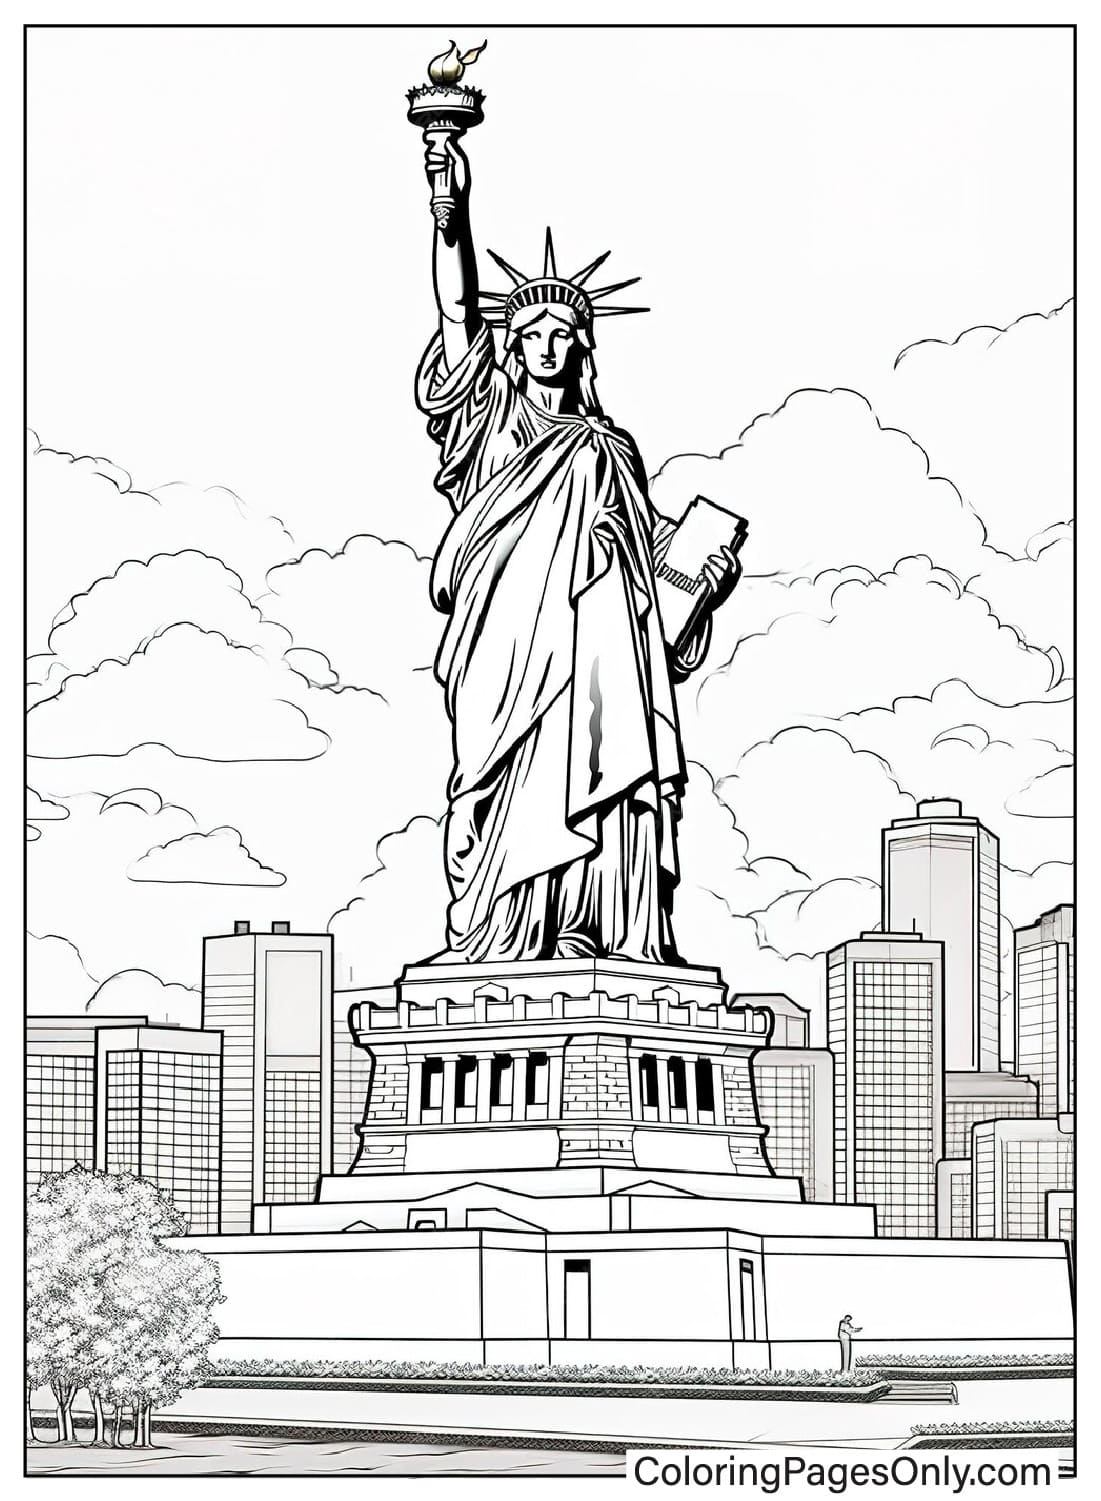 Реалистичная раскраска Статуи Свободы из Статуи Свободы